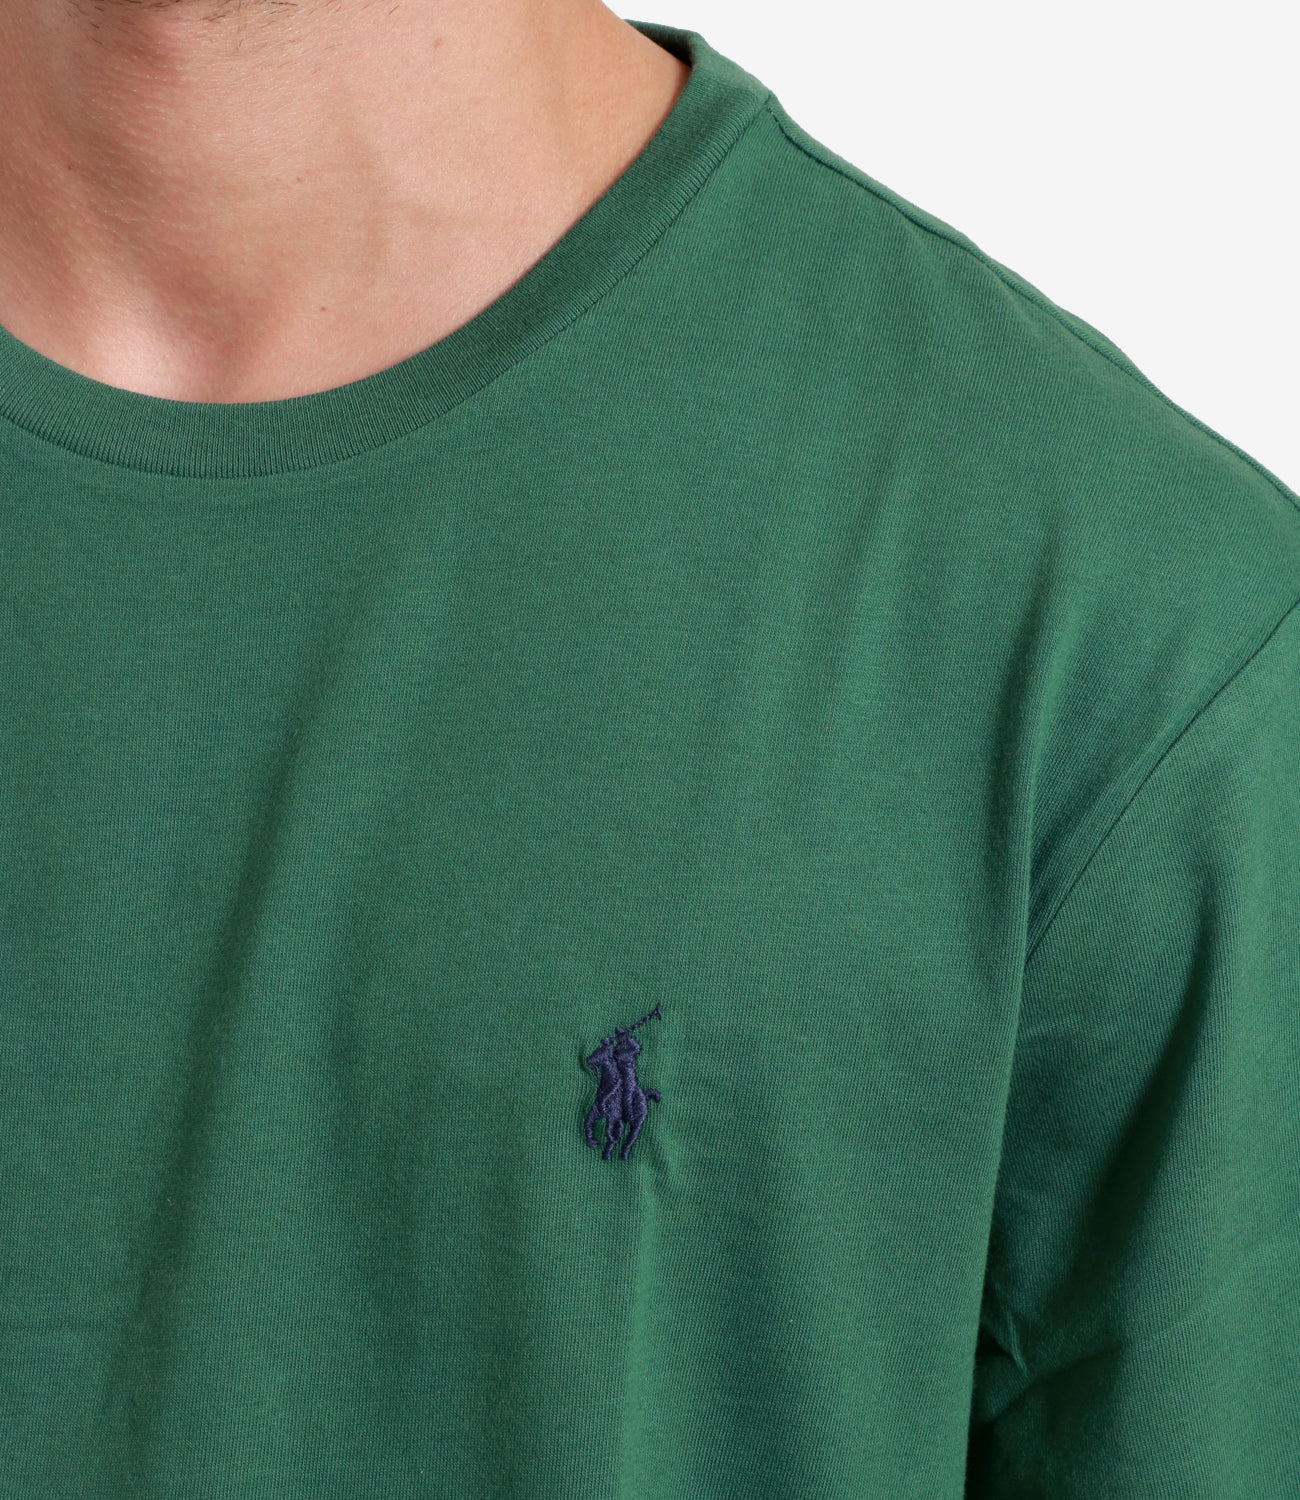 Polo Ralph Lauren | Forest Green T-Shirt